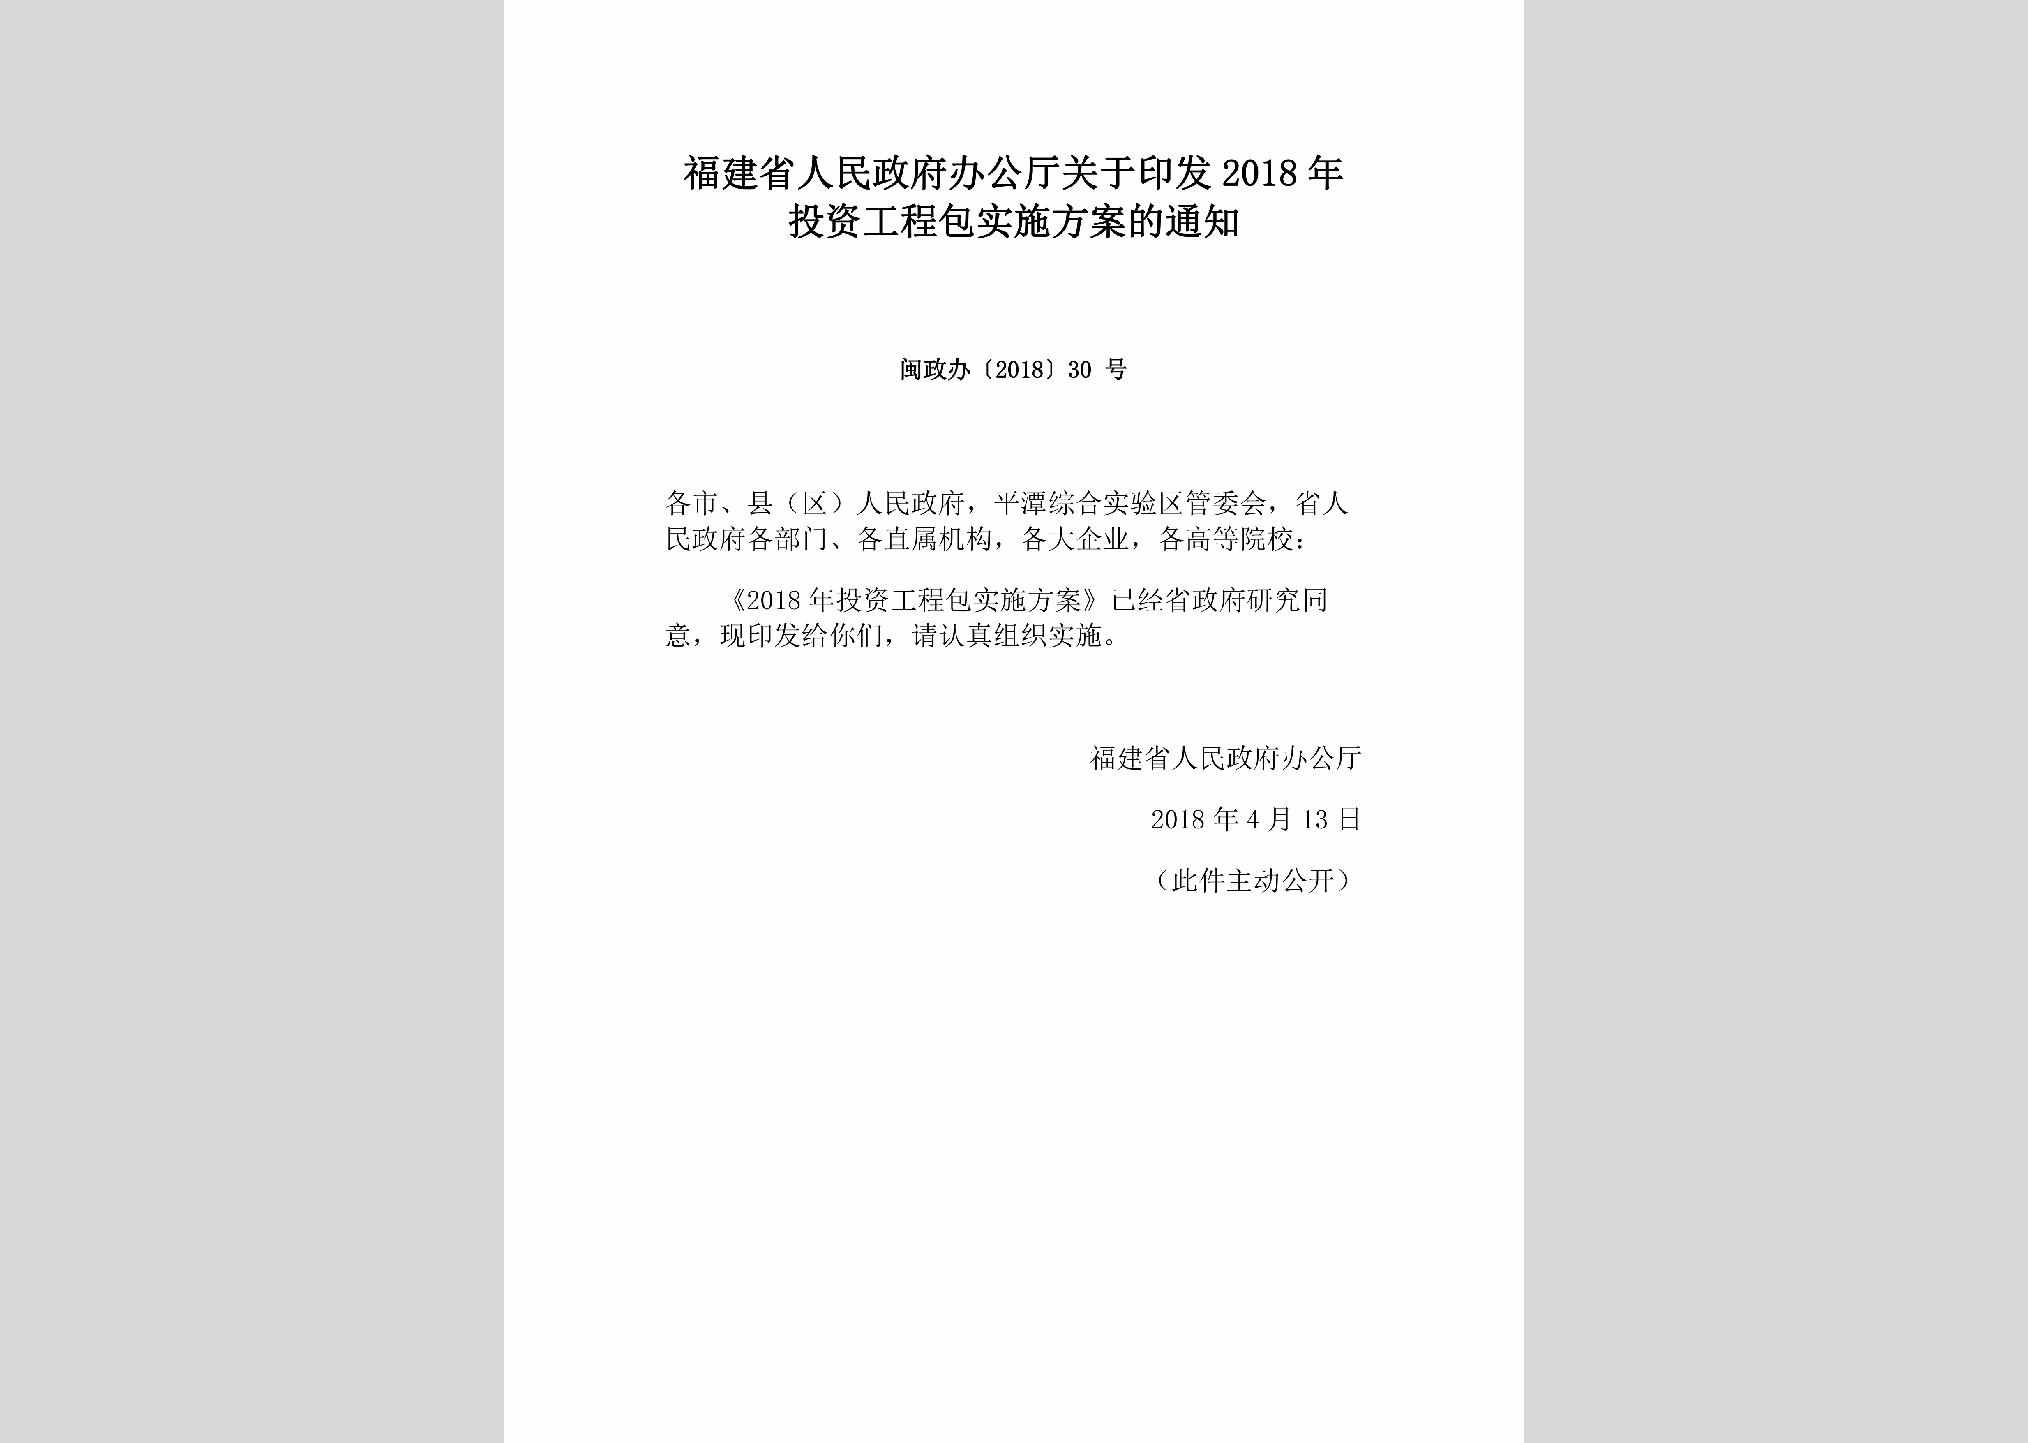 闽政办[2018]30号：福建省人民政府办公厅关于印发2018年投资工程包实施方案的通知